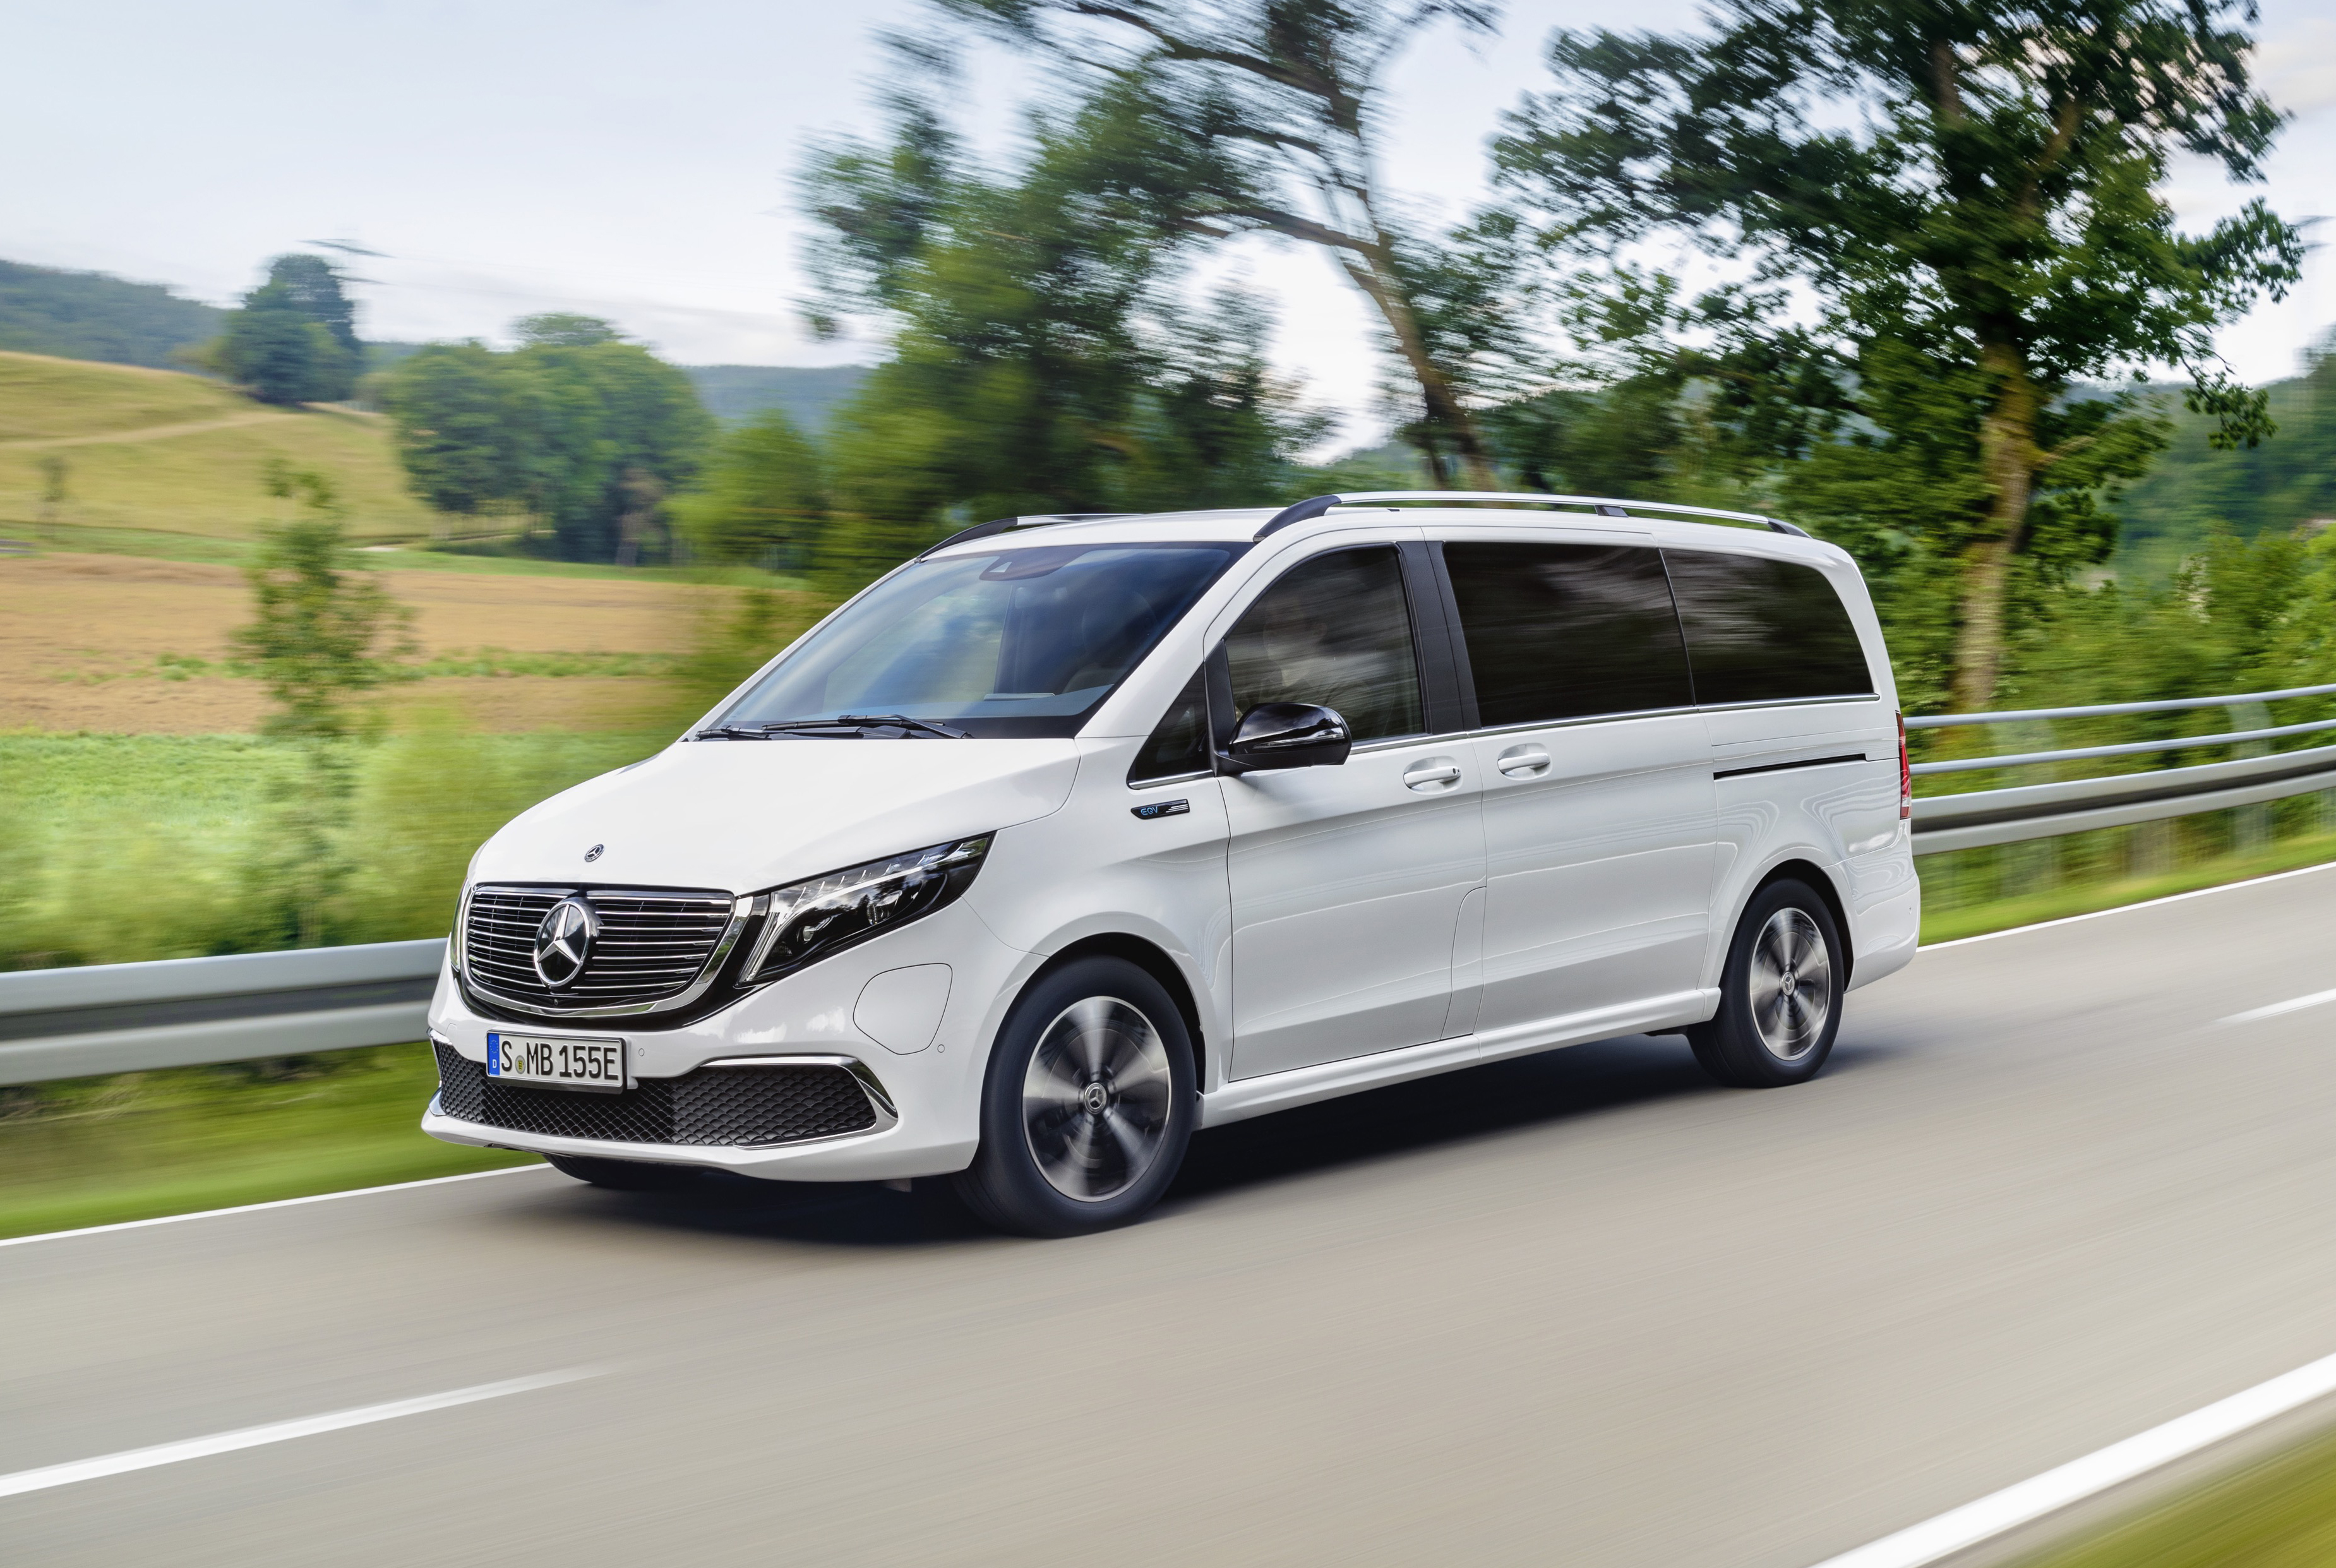 Rodina elektromobilov od Mercedesu sa rozrastá o EQV, prvý prémiový elektrický van na svete